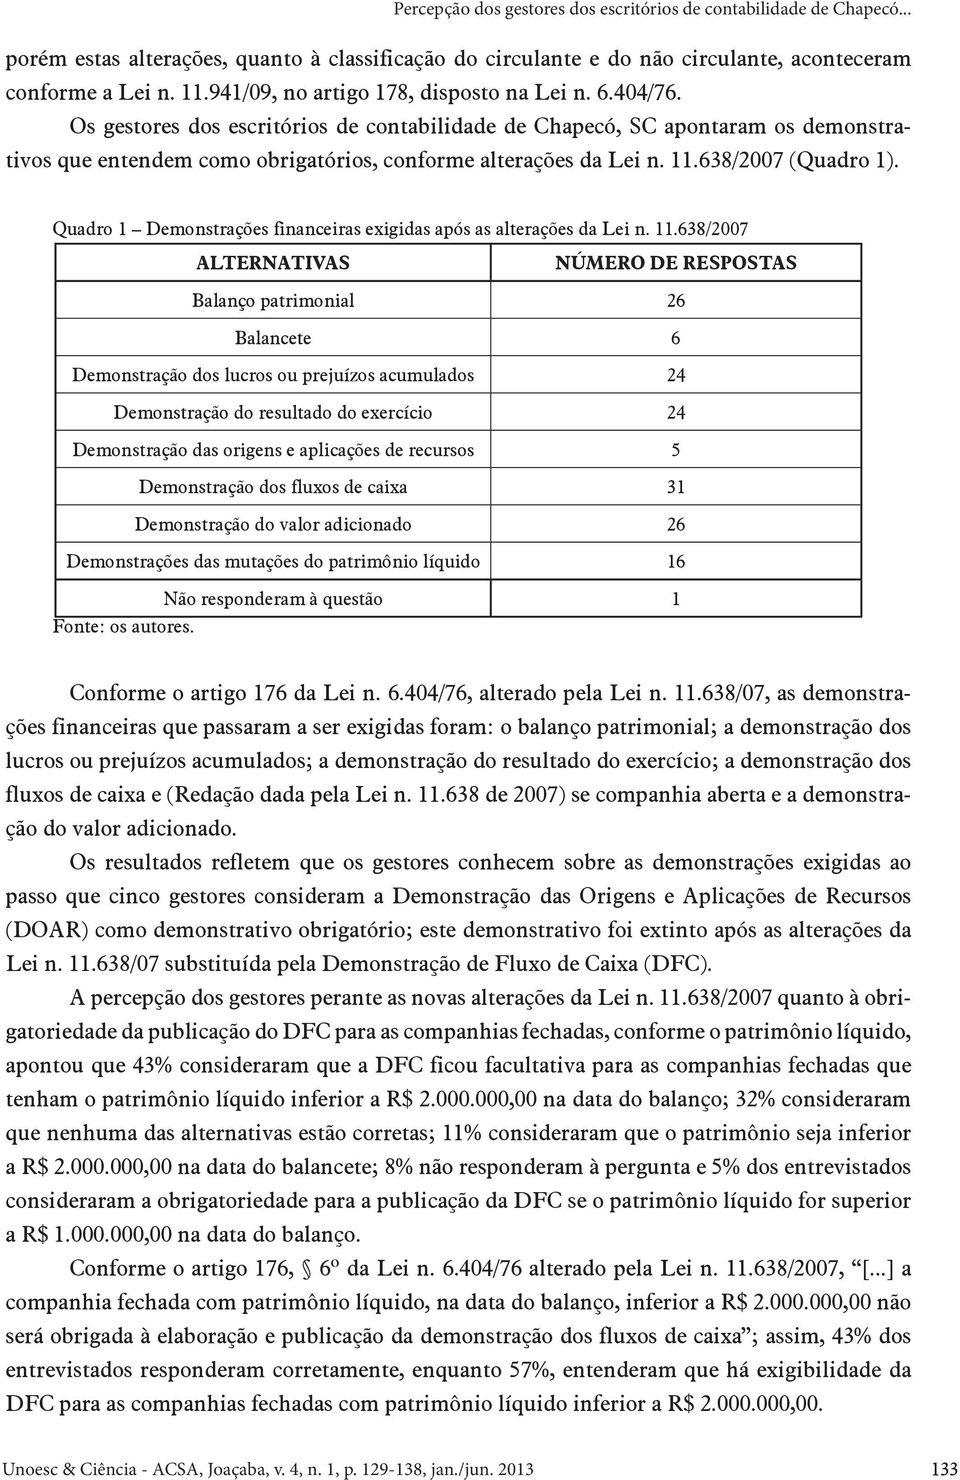 Os gestores dos escritórios de contabilidade de Chapecó, SC apontaram os demonstrativos que entendem como obrigatórios, conforme alterações da Lei n. 11.638/2007 (Quadro 1).